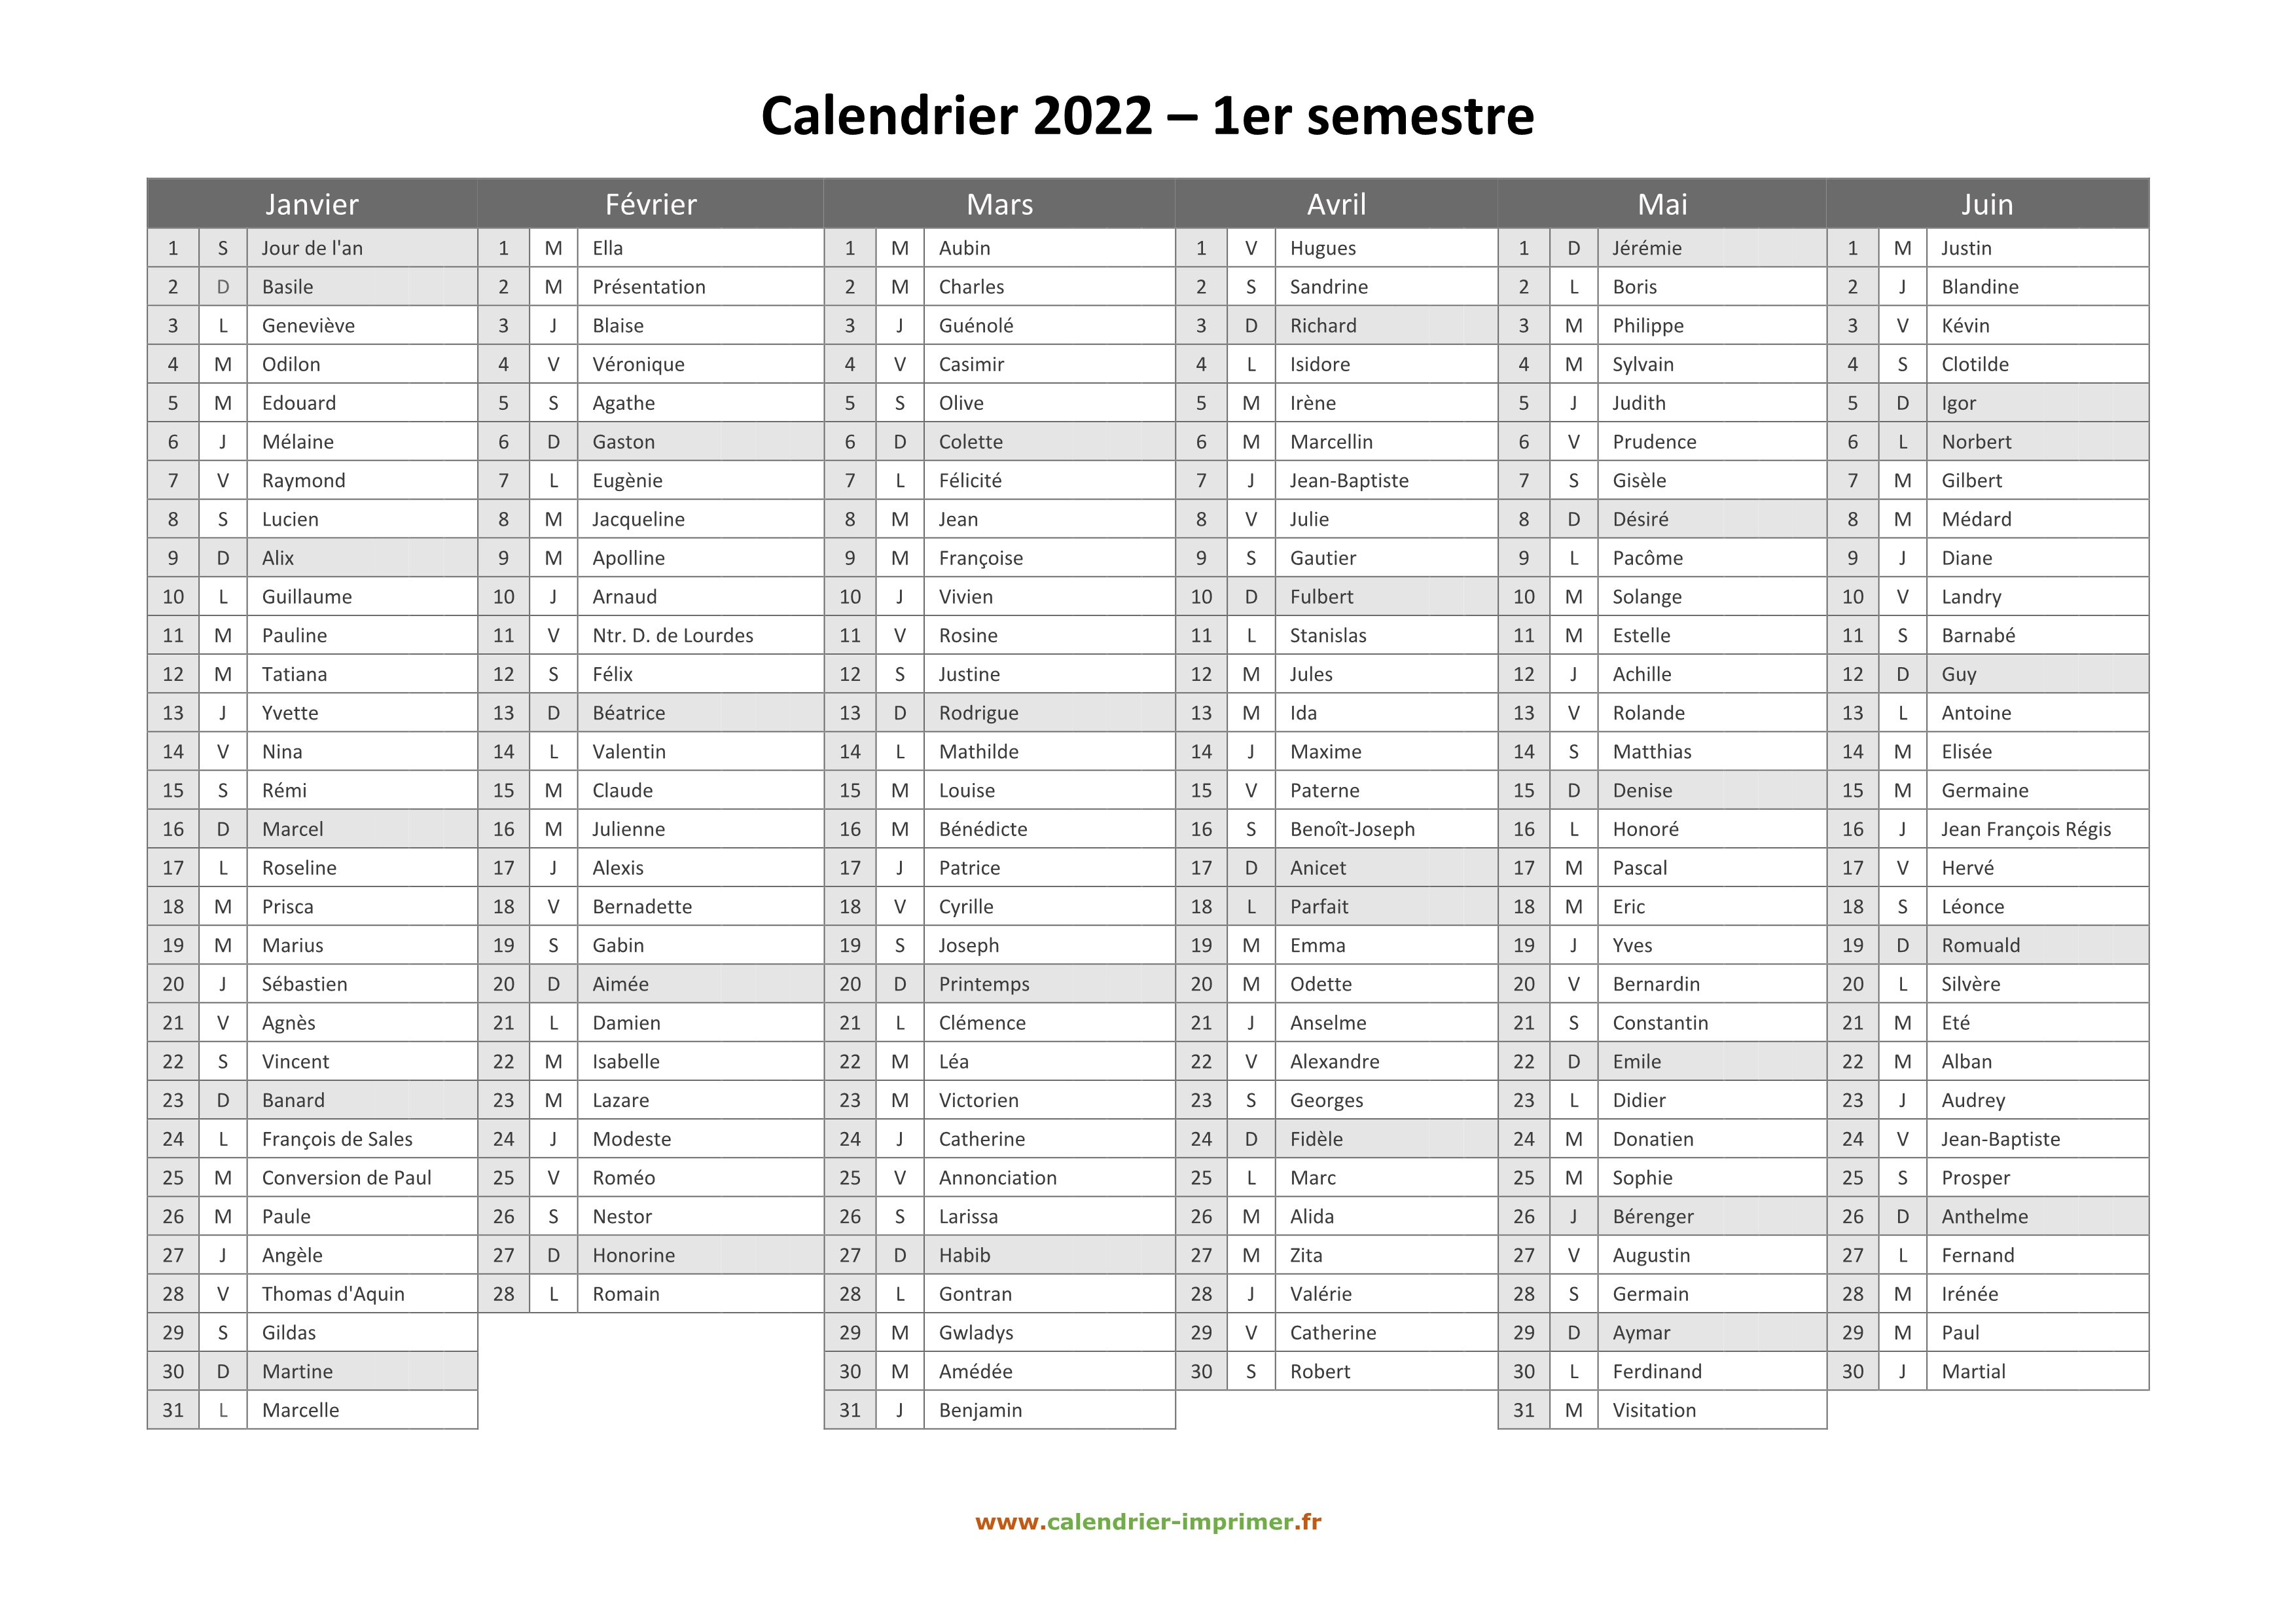 Calendrier Deuxième Semestre 2022 Calendrier 2022 à imprimer gratuit